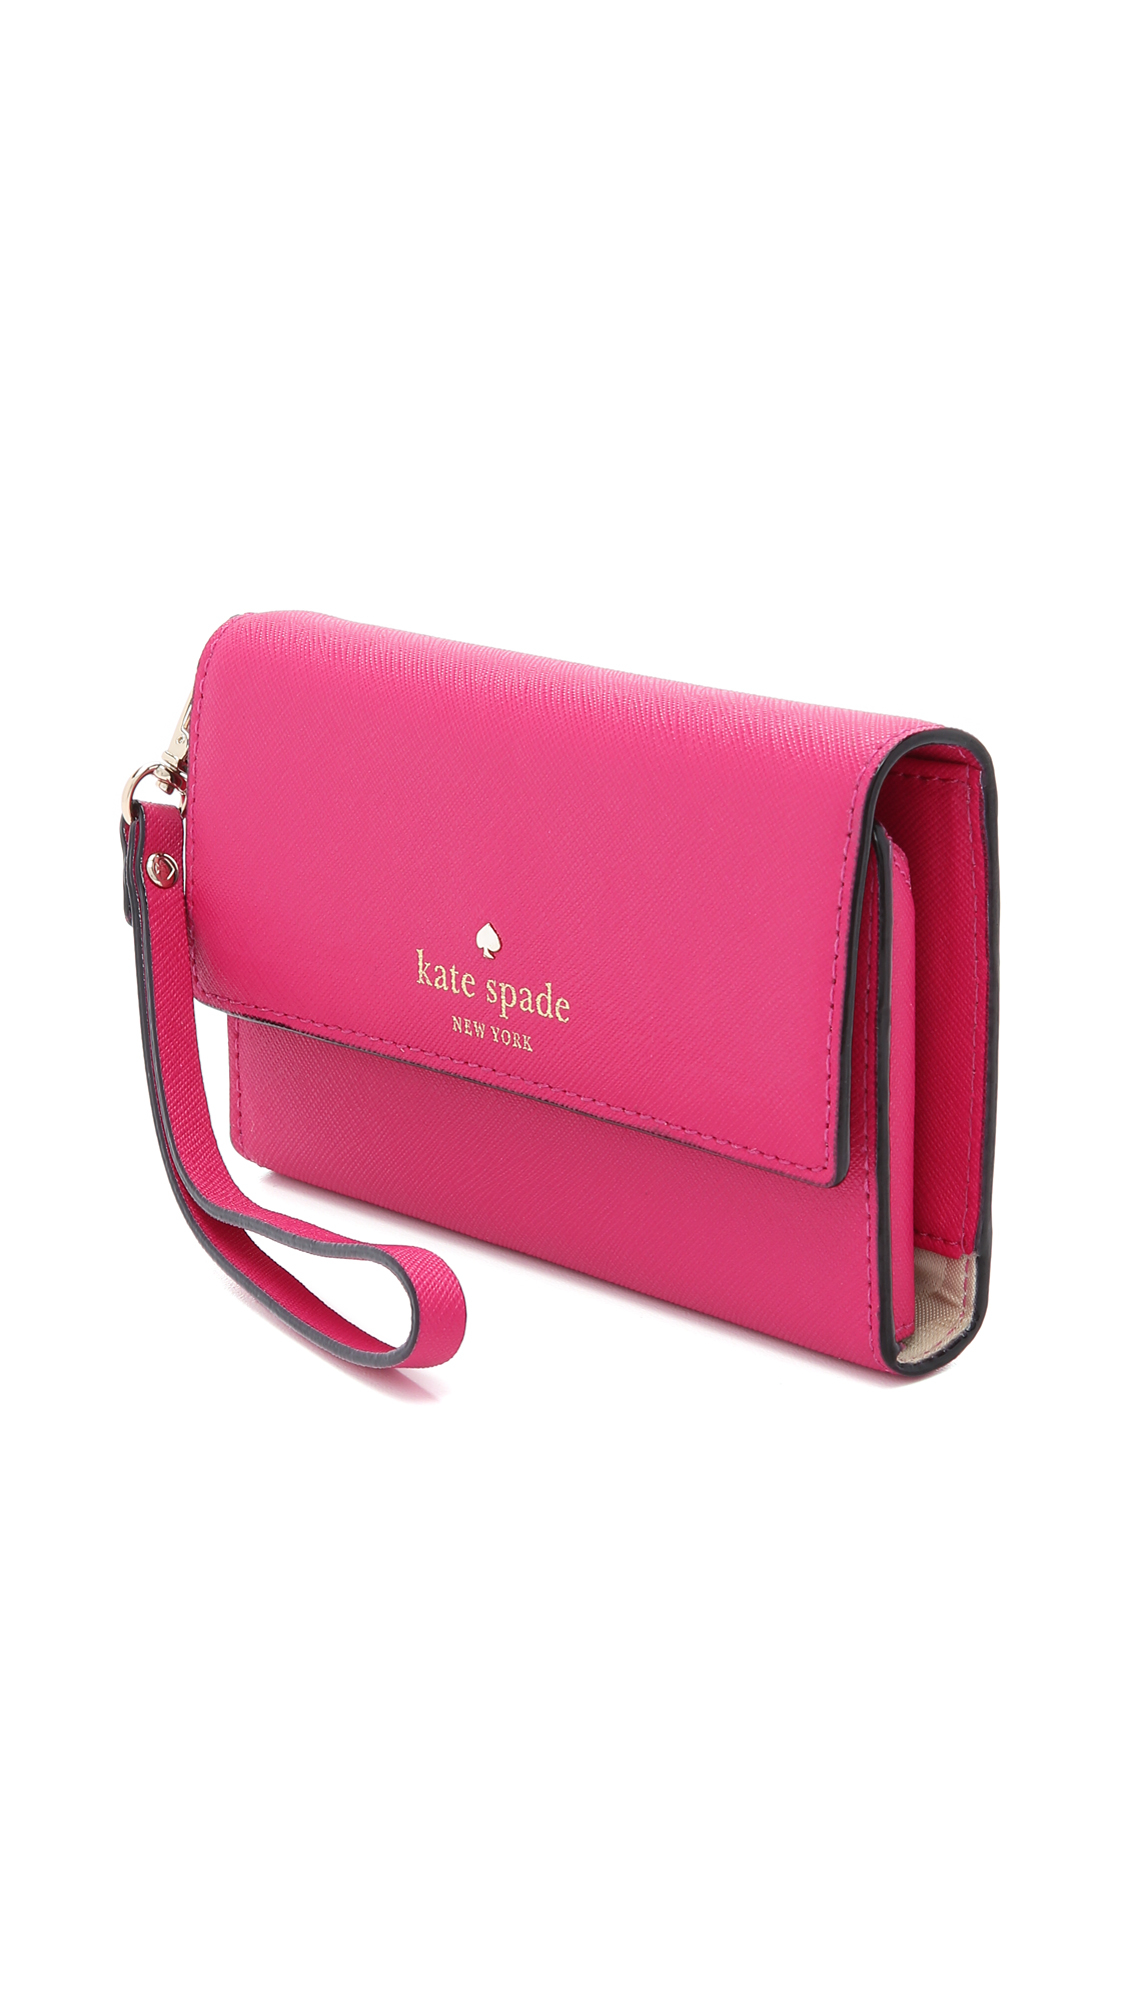 Kate Spade Cedar Street Iphone 6 / 6s Case Wristlet in Pink - Lyst